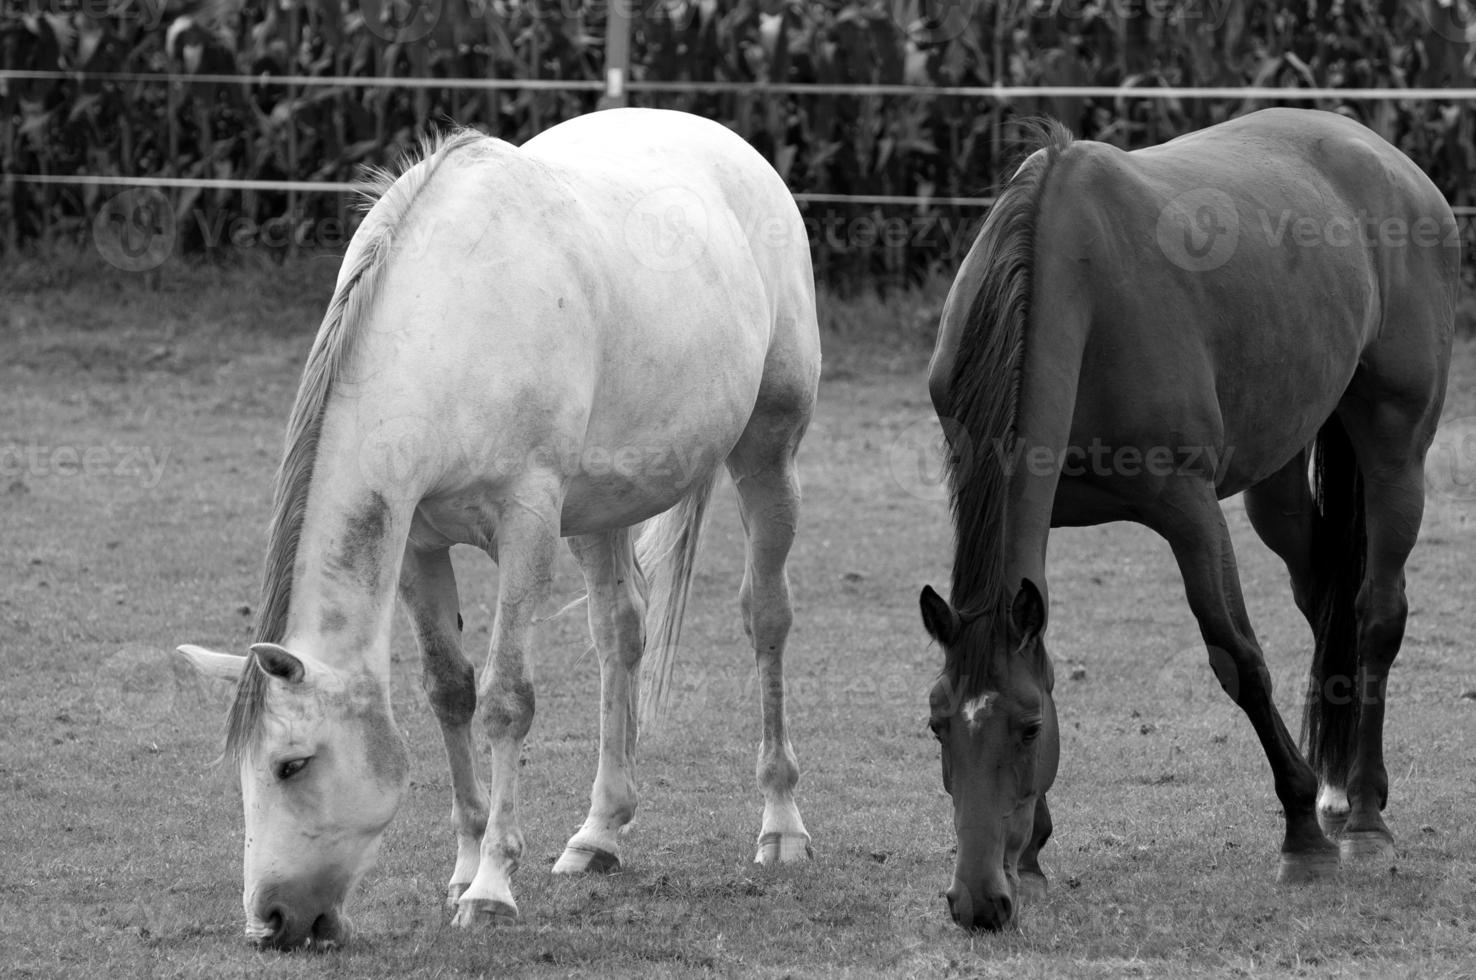 paarden in Westfalen foto